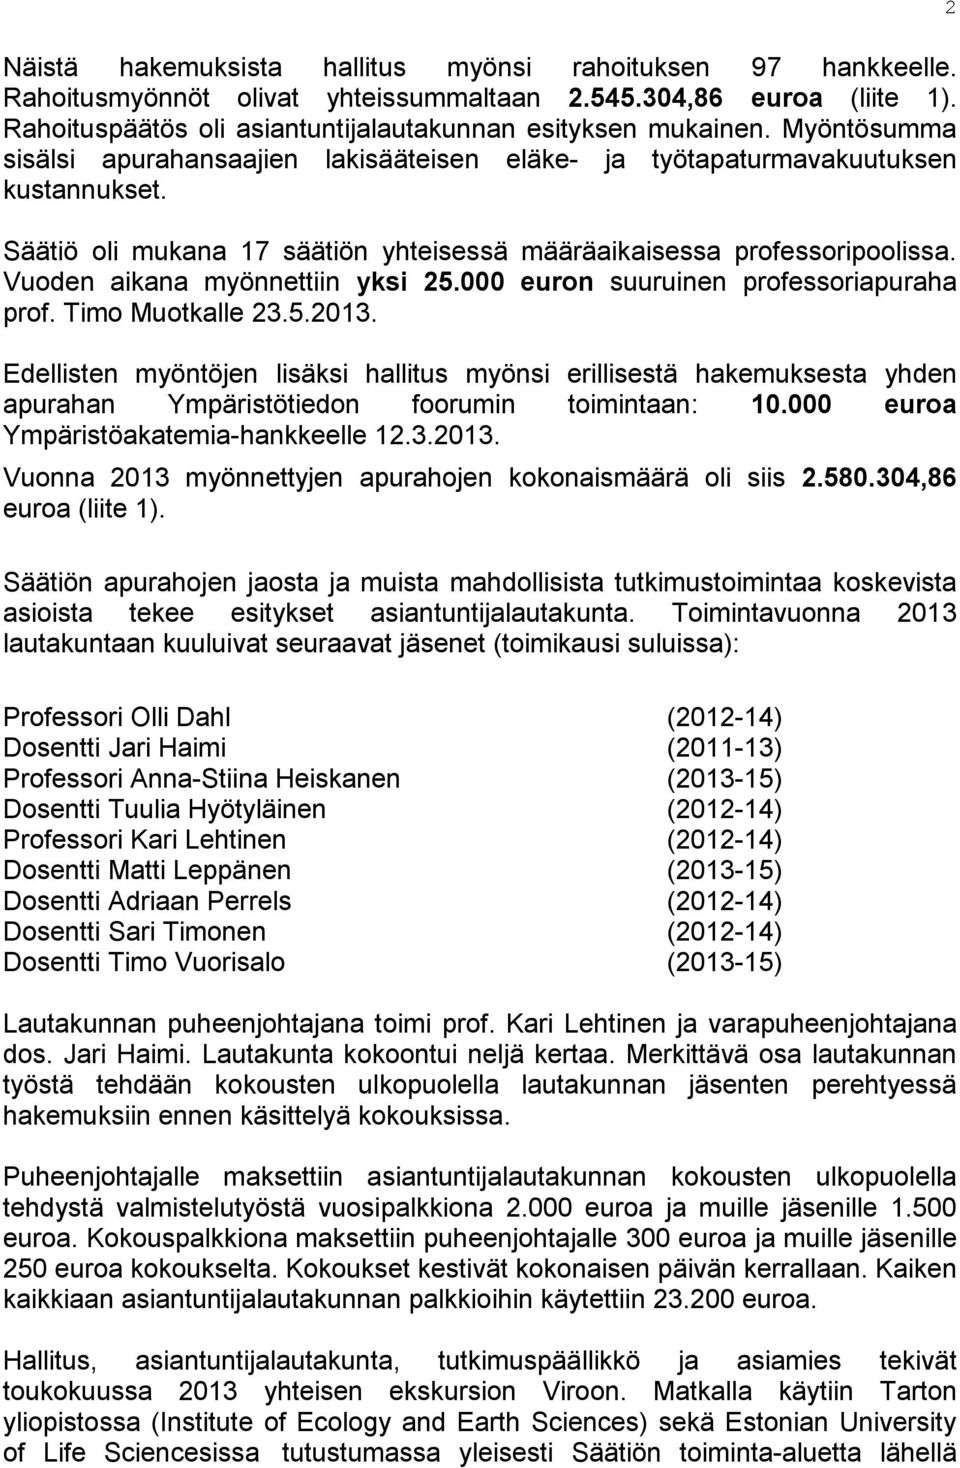 Vuoden aikana myönnettiin yksi 25.000 euron suuruinen professoriapuraha prof. Timo Muotkalle 23.5.2013.